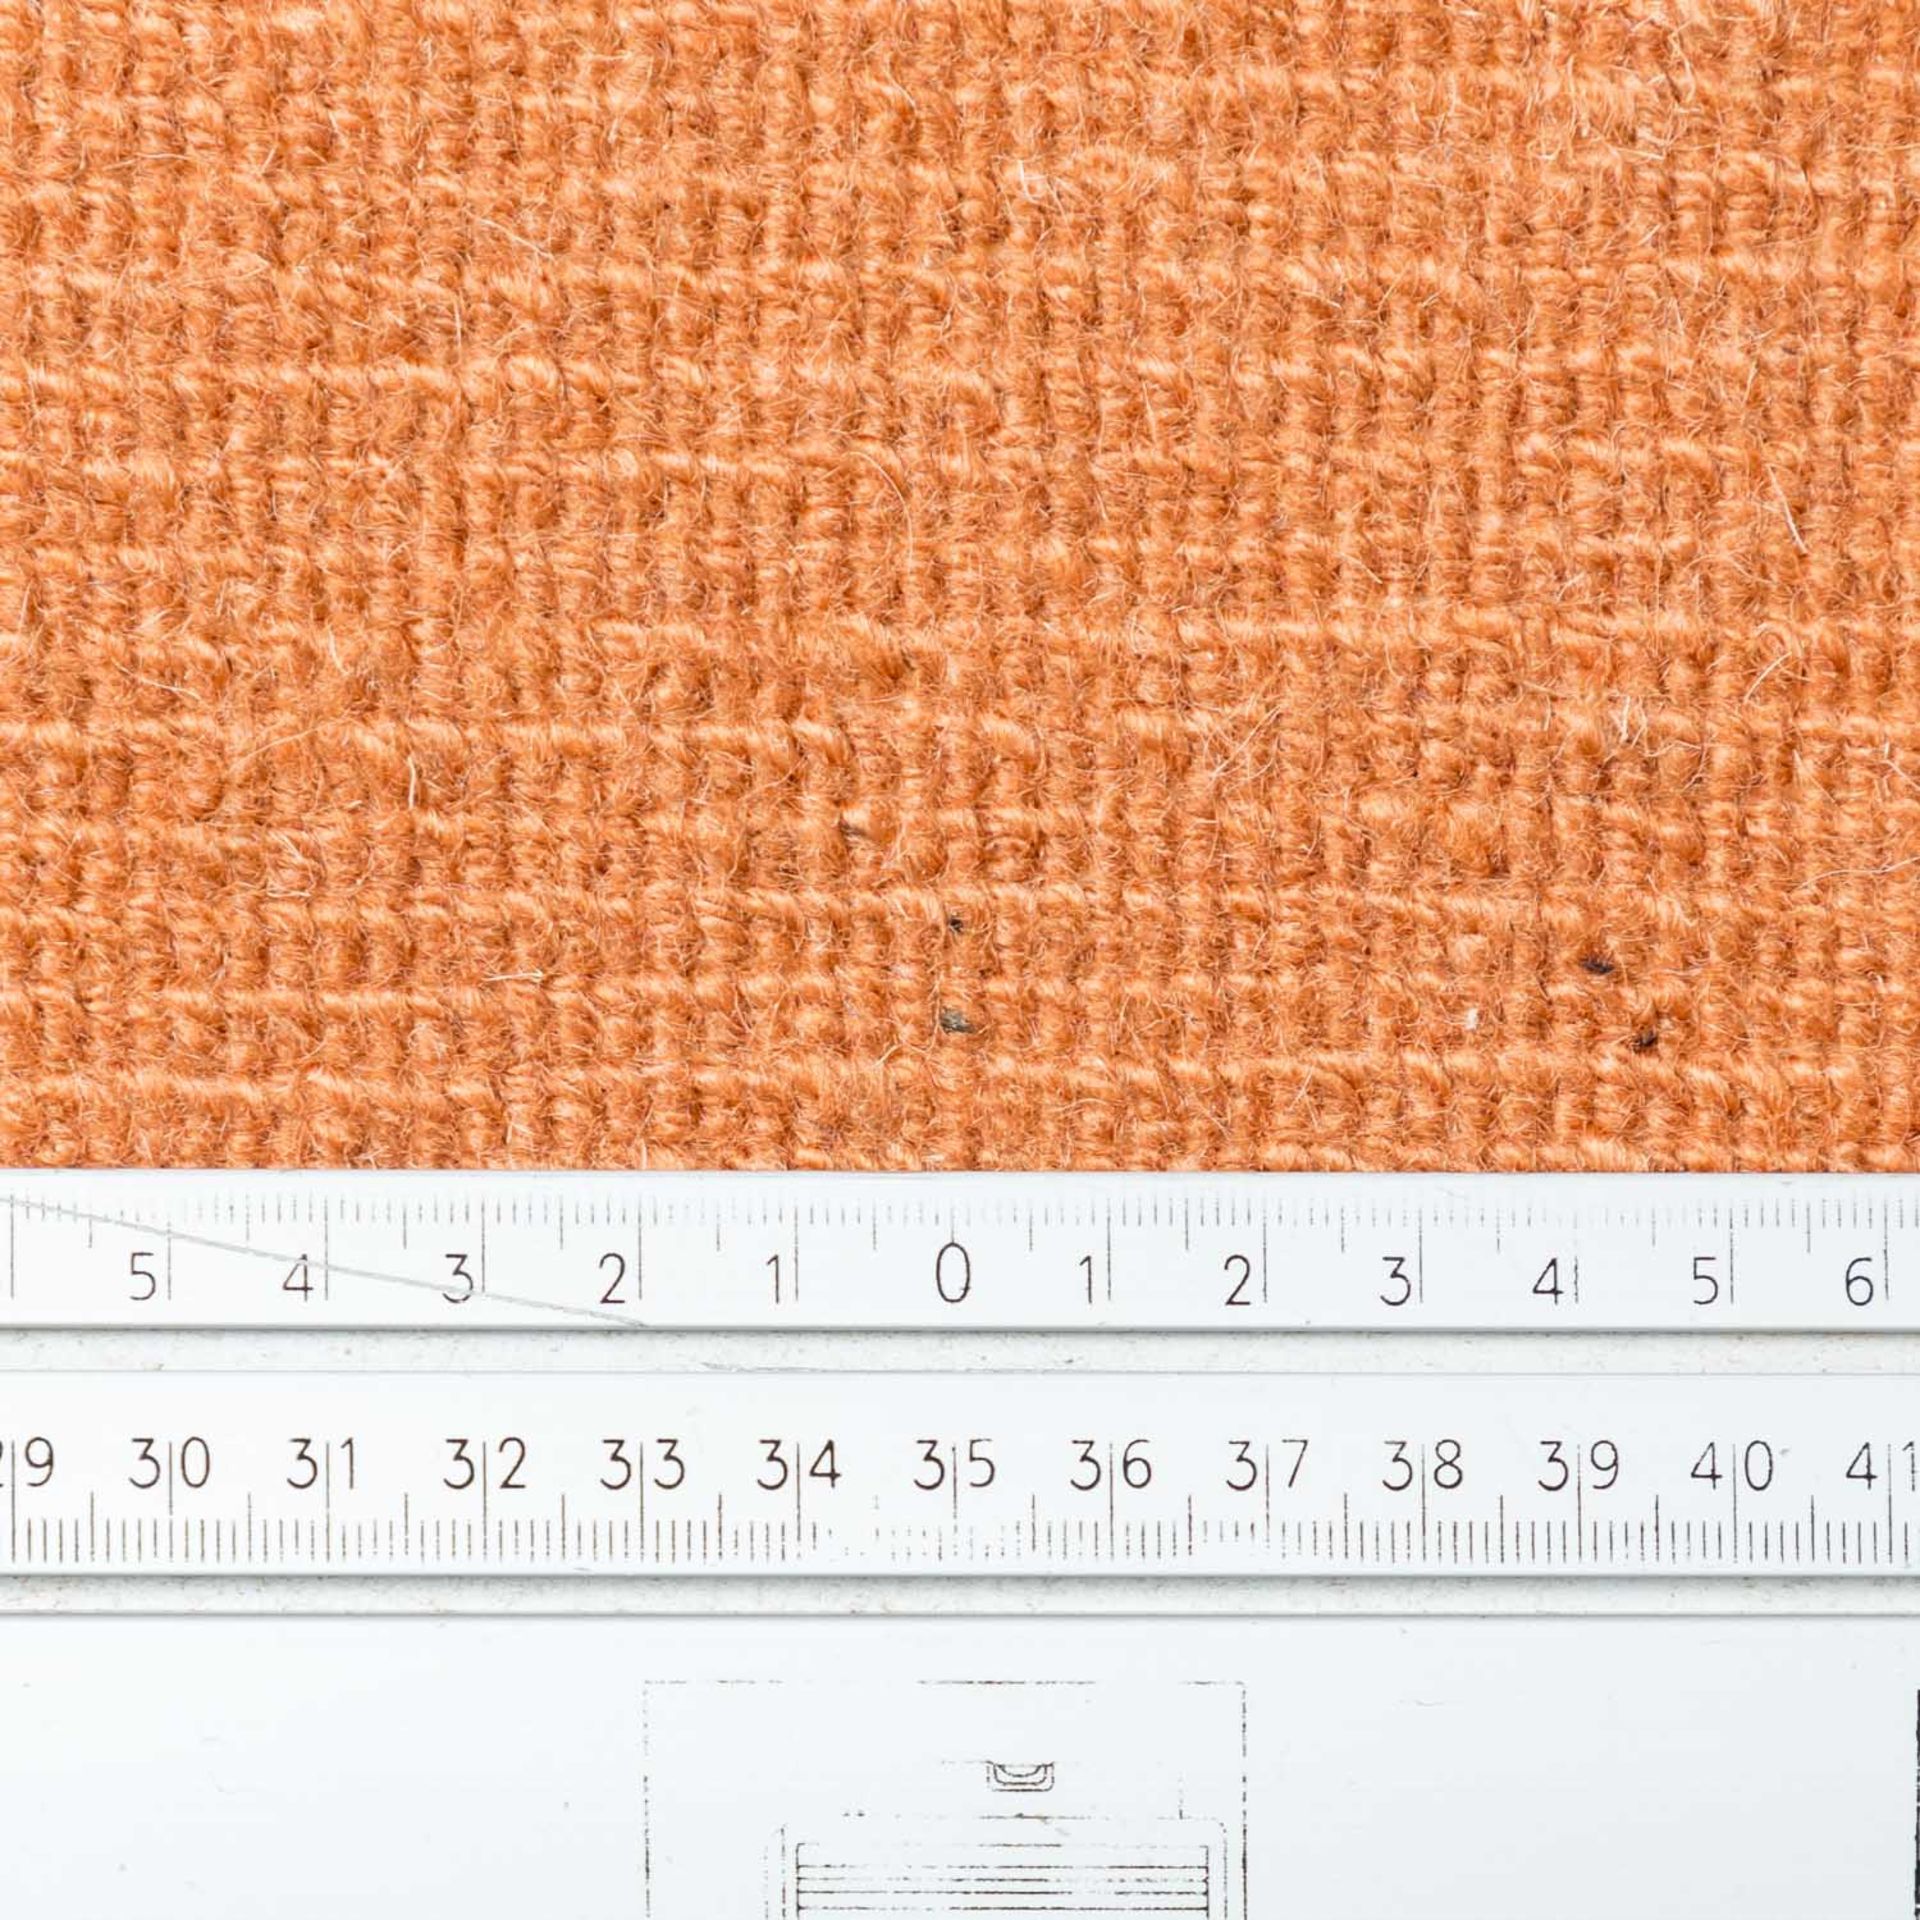 Moderner Teppich. GABBEH/PERSIEN, 20. Jh., 240x170 cm. - Bild 4 aus 4